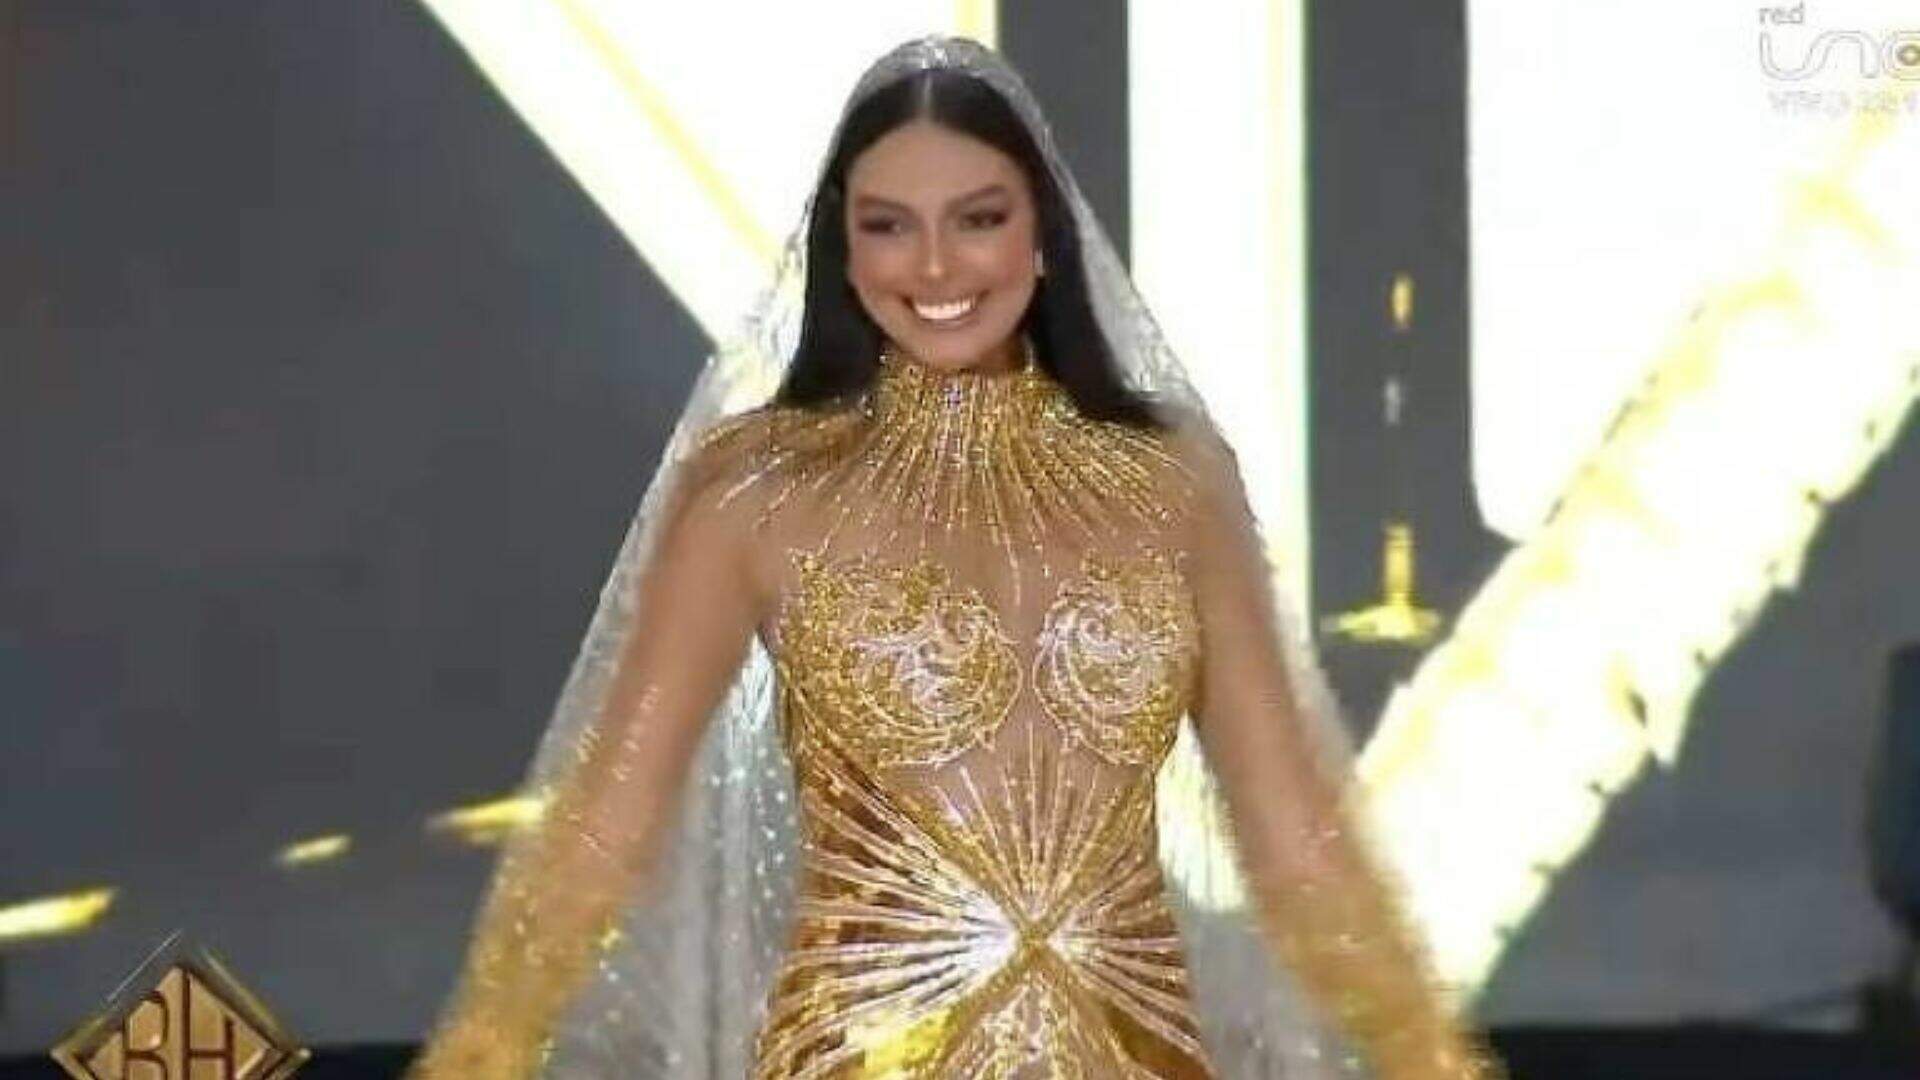 Miss Brasil usa vestido inspirado em Nossa Senhora Aparecida para concurso mundial e web reage: “Obra de arte”